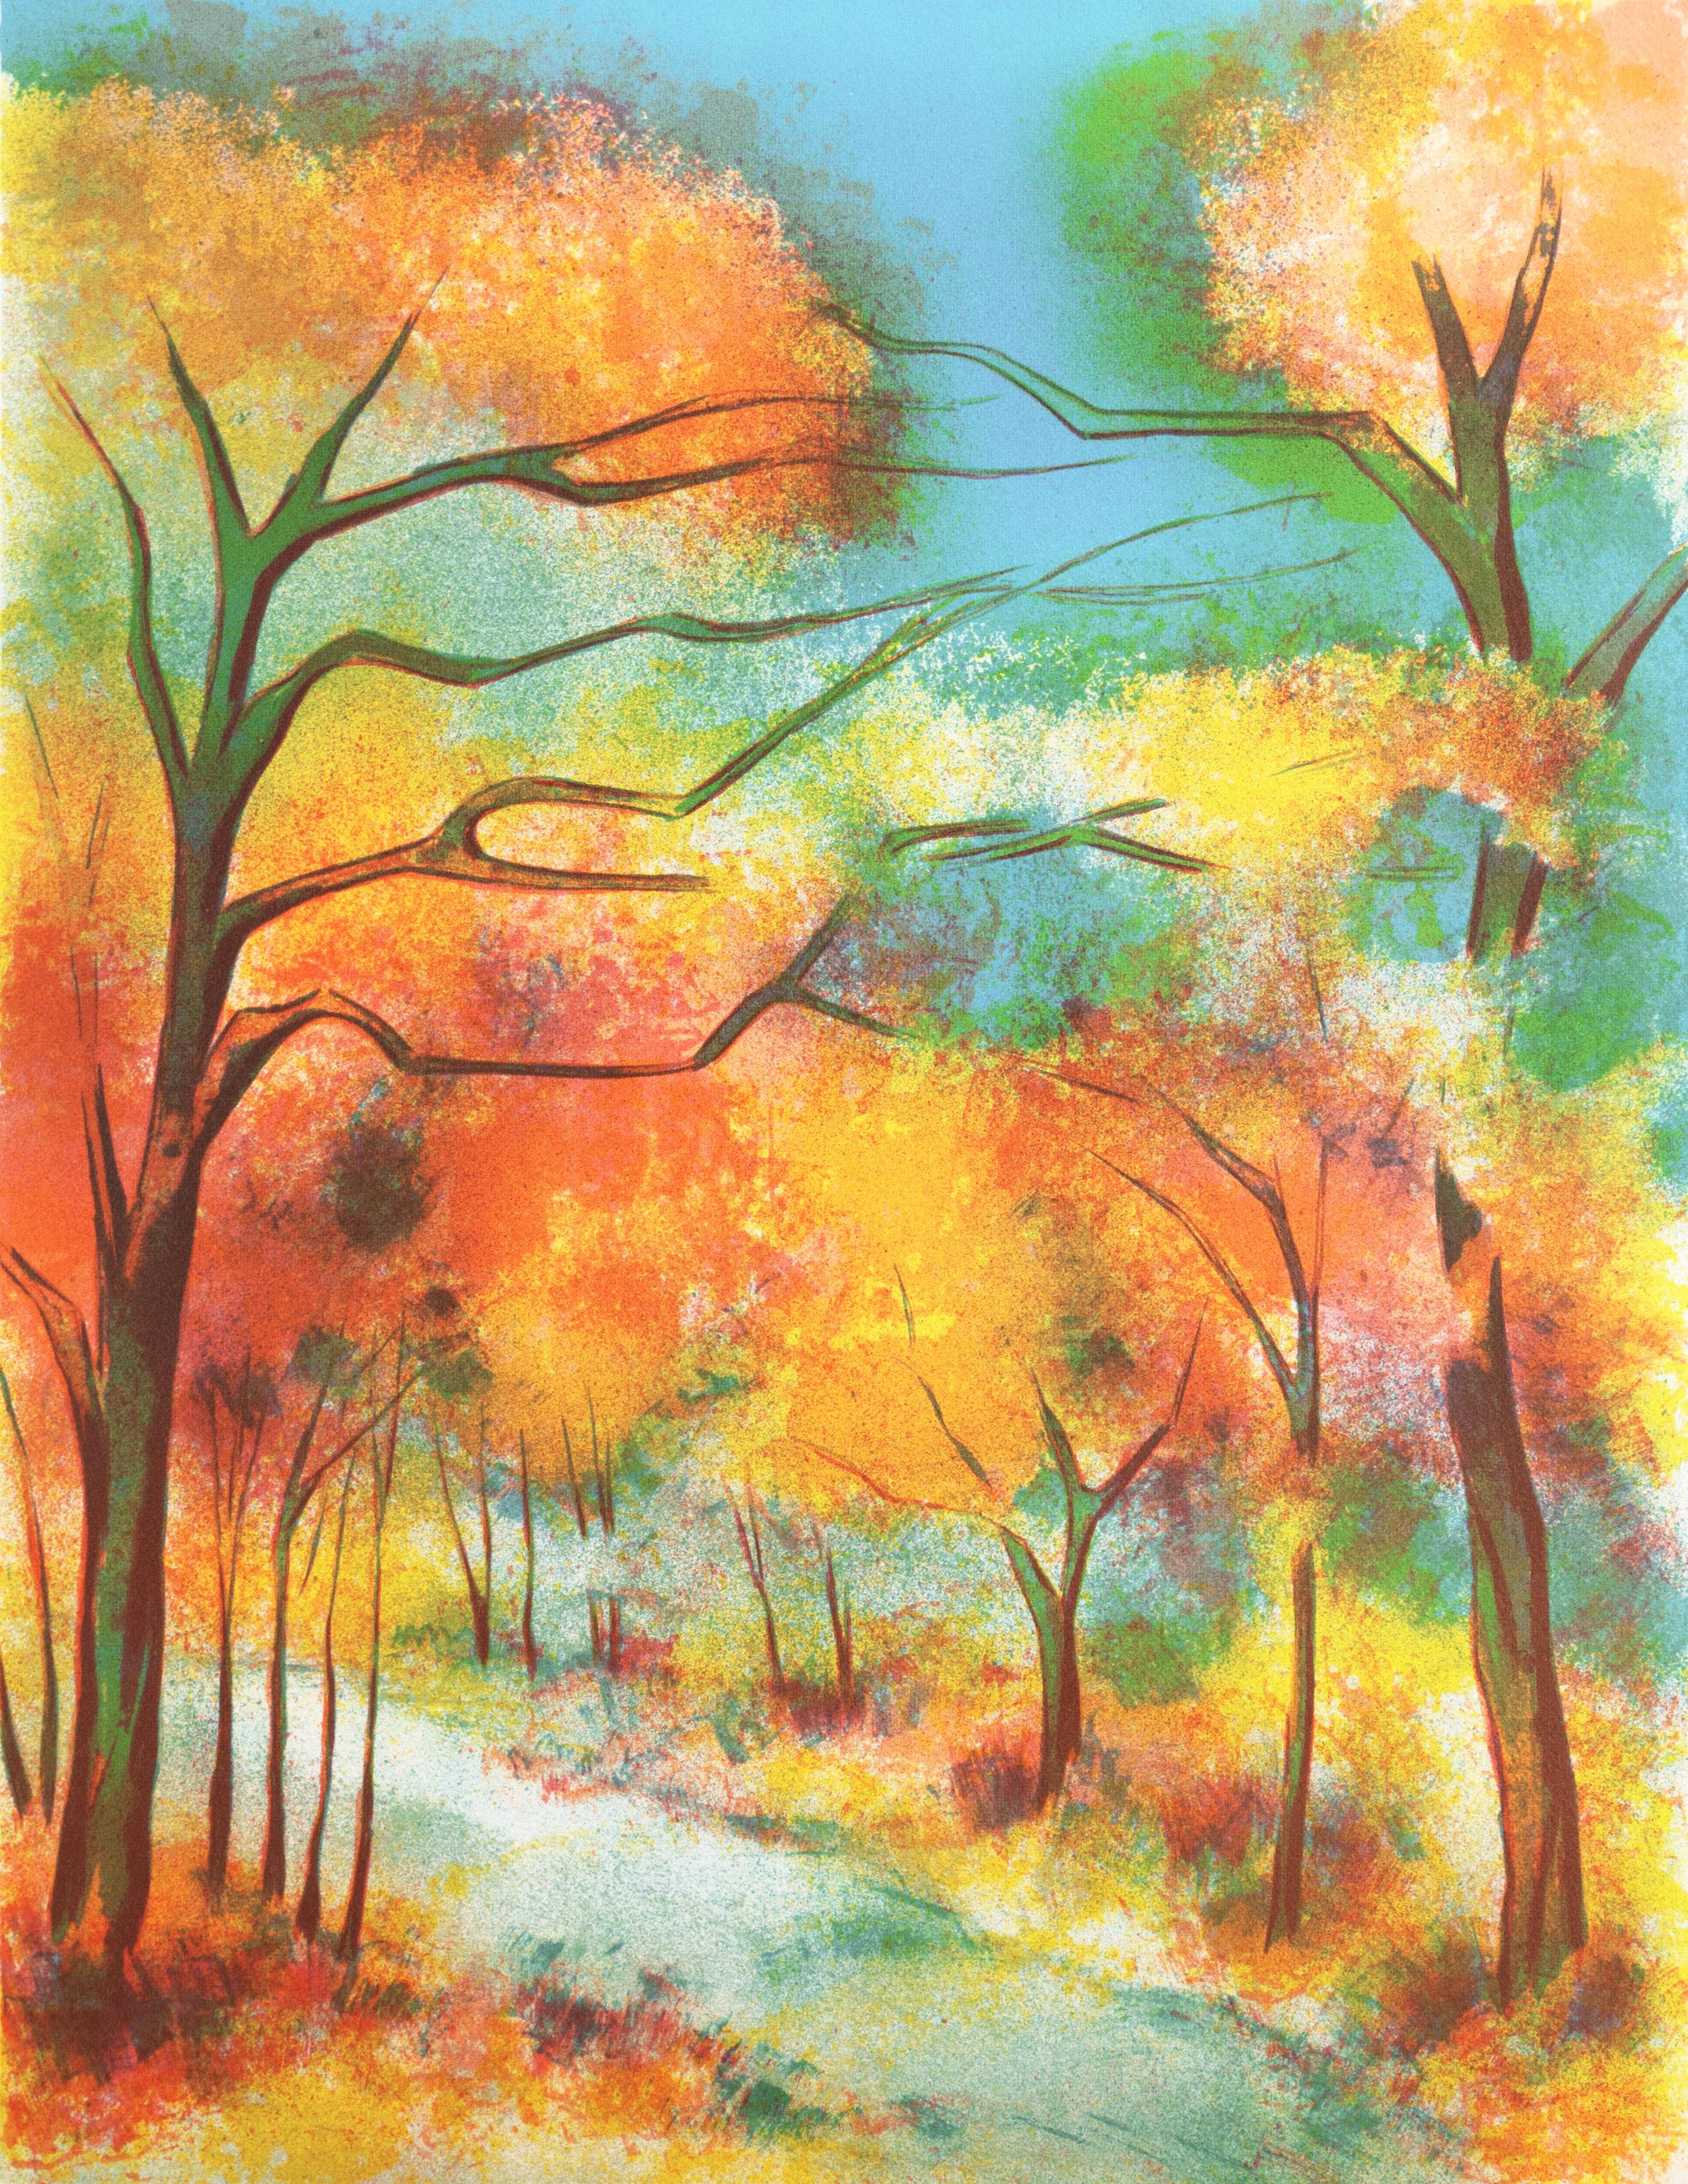  « Autumn Colors », paysage post-impressionniste français, Académie Julian, Paris